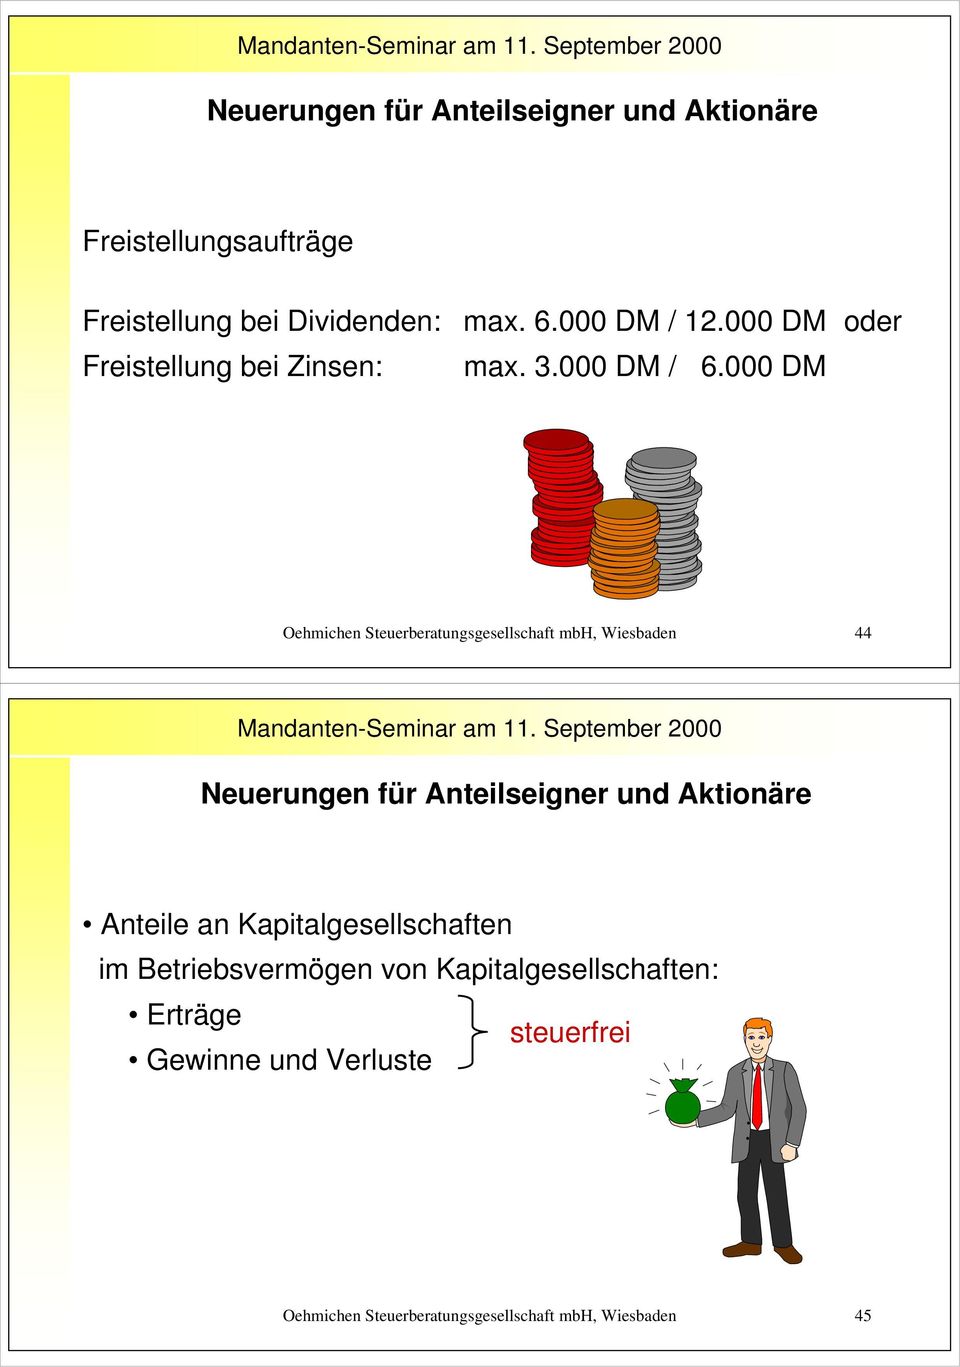 000 DM Oehmichen Steuerberatungsgesellschaft mbh, Wiesbaden 44 Neuerungen für Anteilseigner und Aktionäre